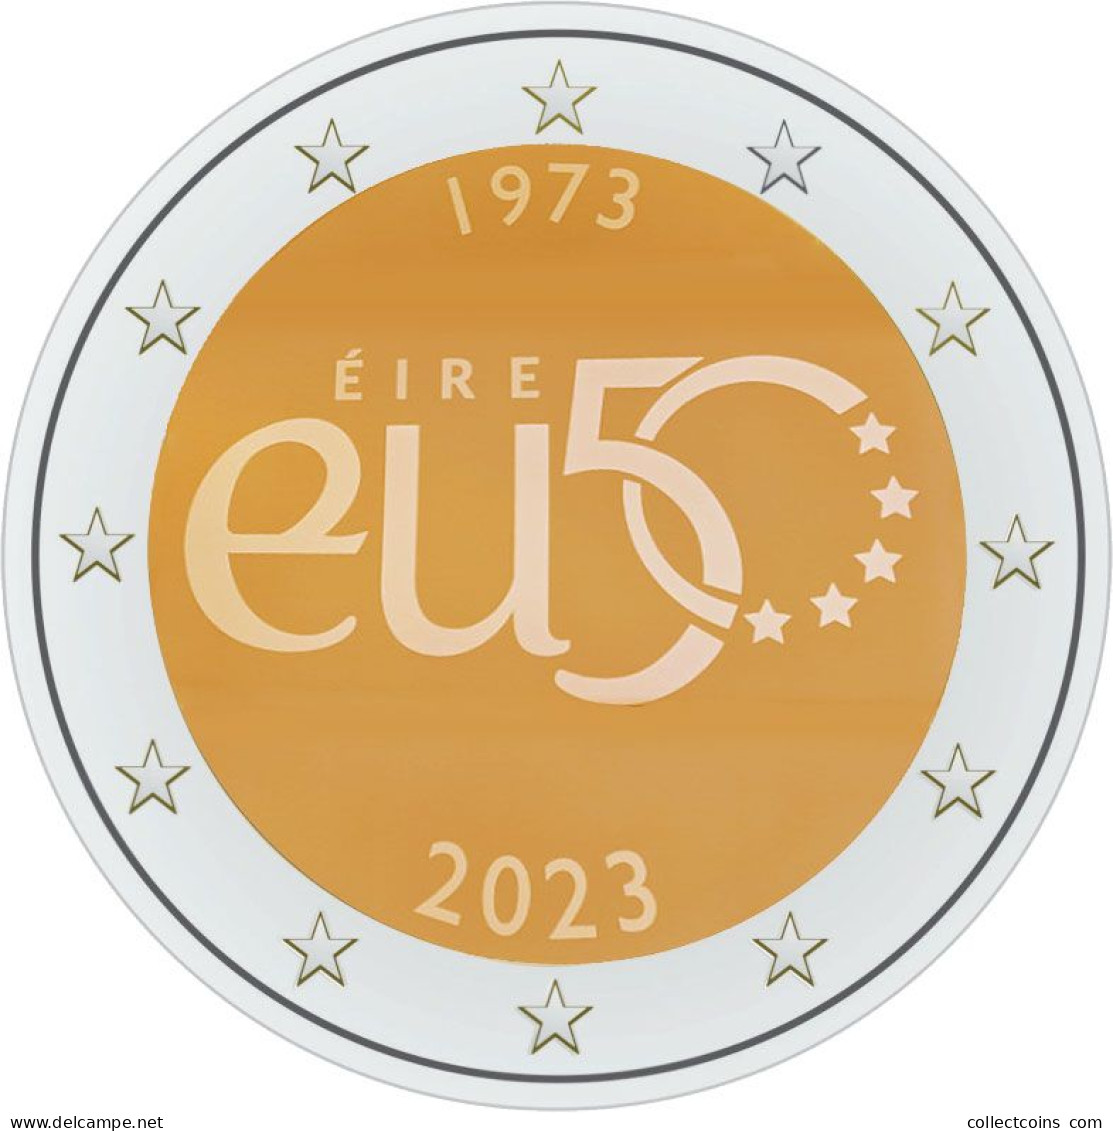 Ierland 2 Euro 2023 Toedreding EU UNC Munt Irland Irlanda Irlande - Irlanda